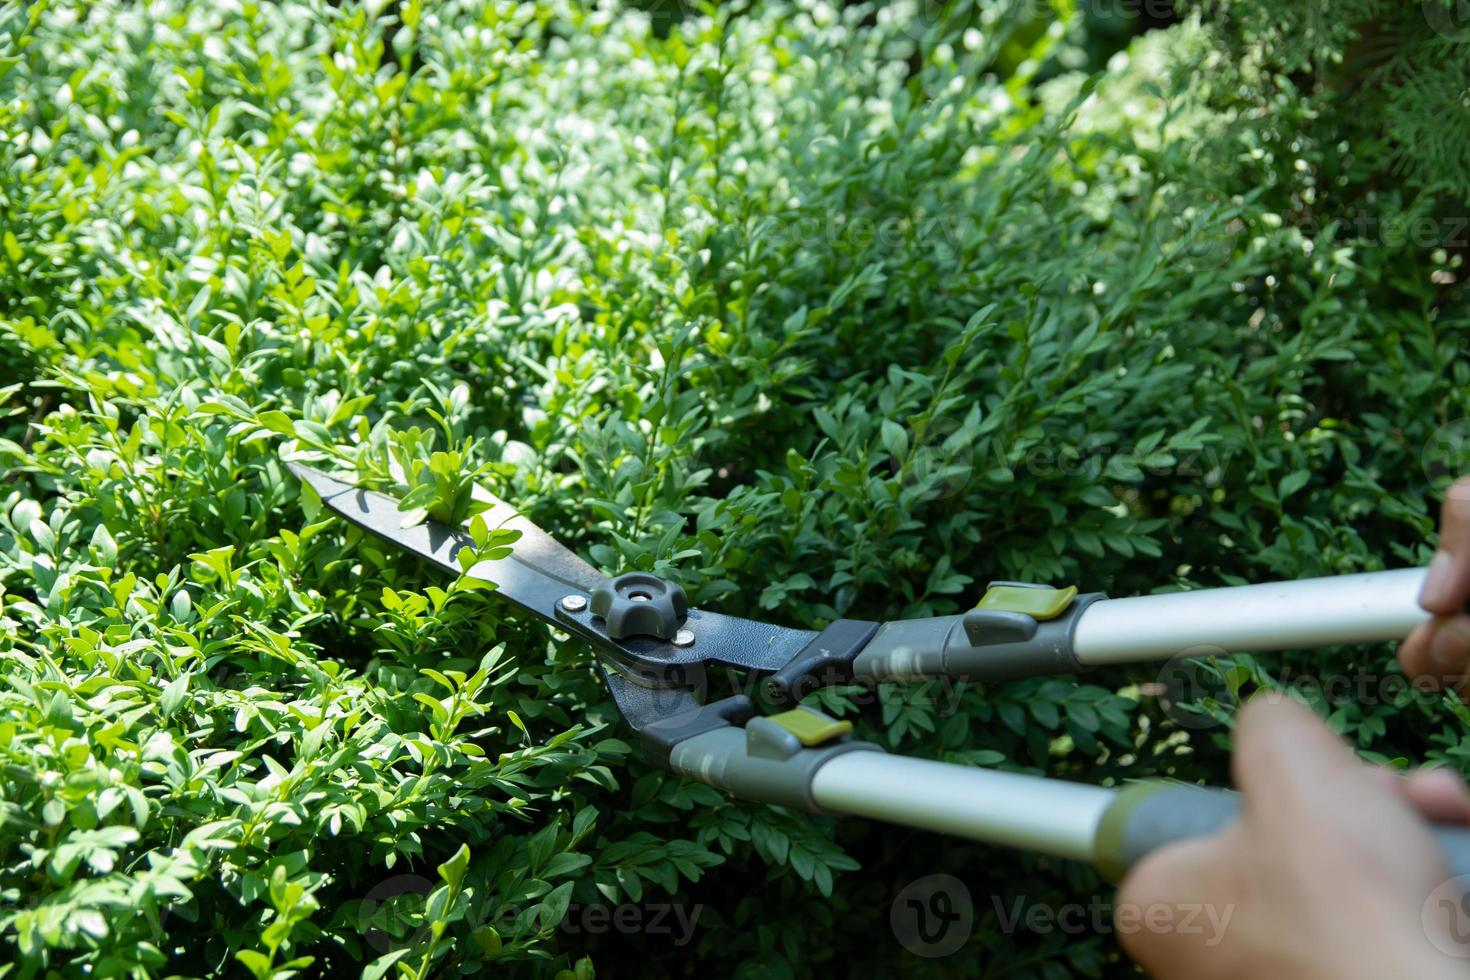 snoeien van groene struiken in de tuin met grote snoeischaar. zomer tuinieren concept foto